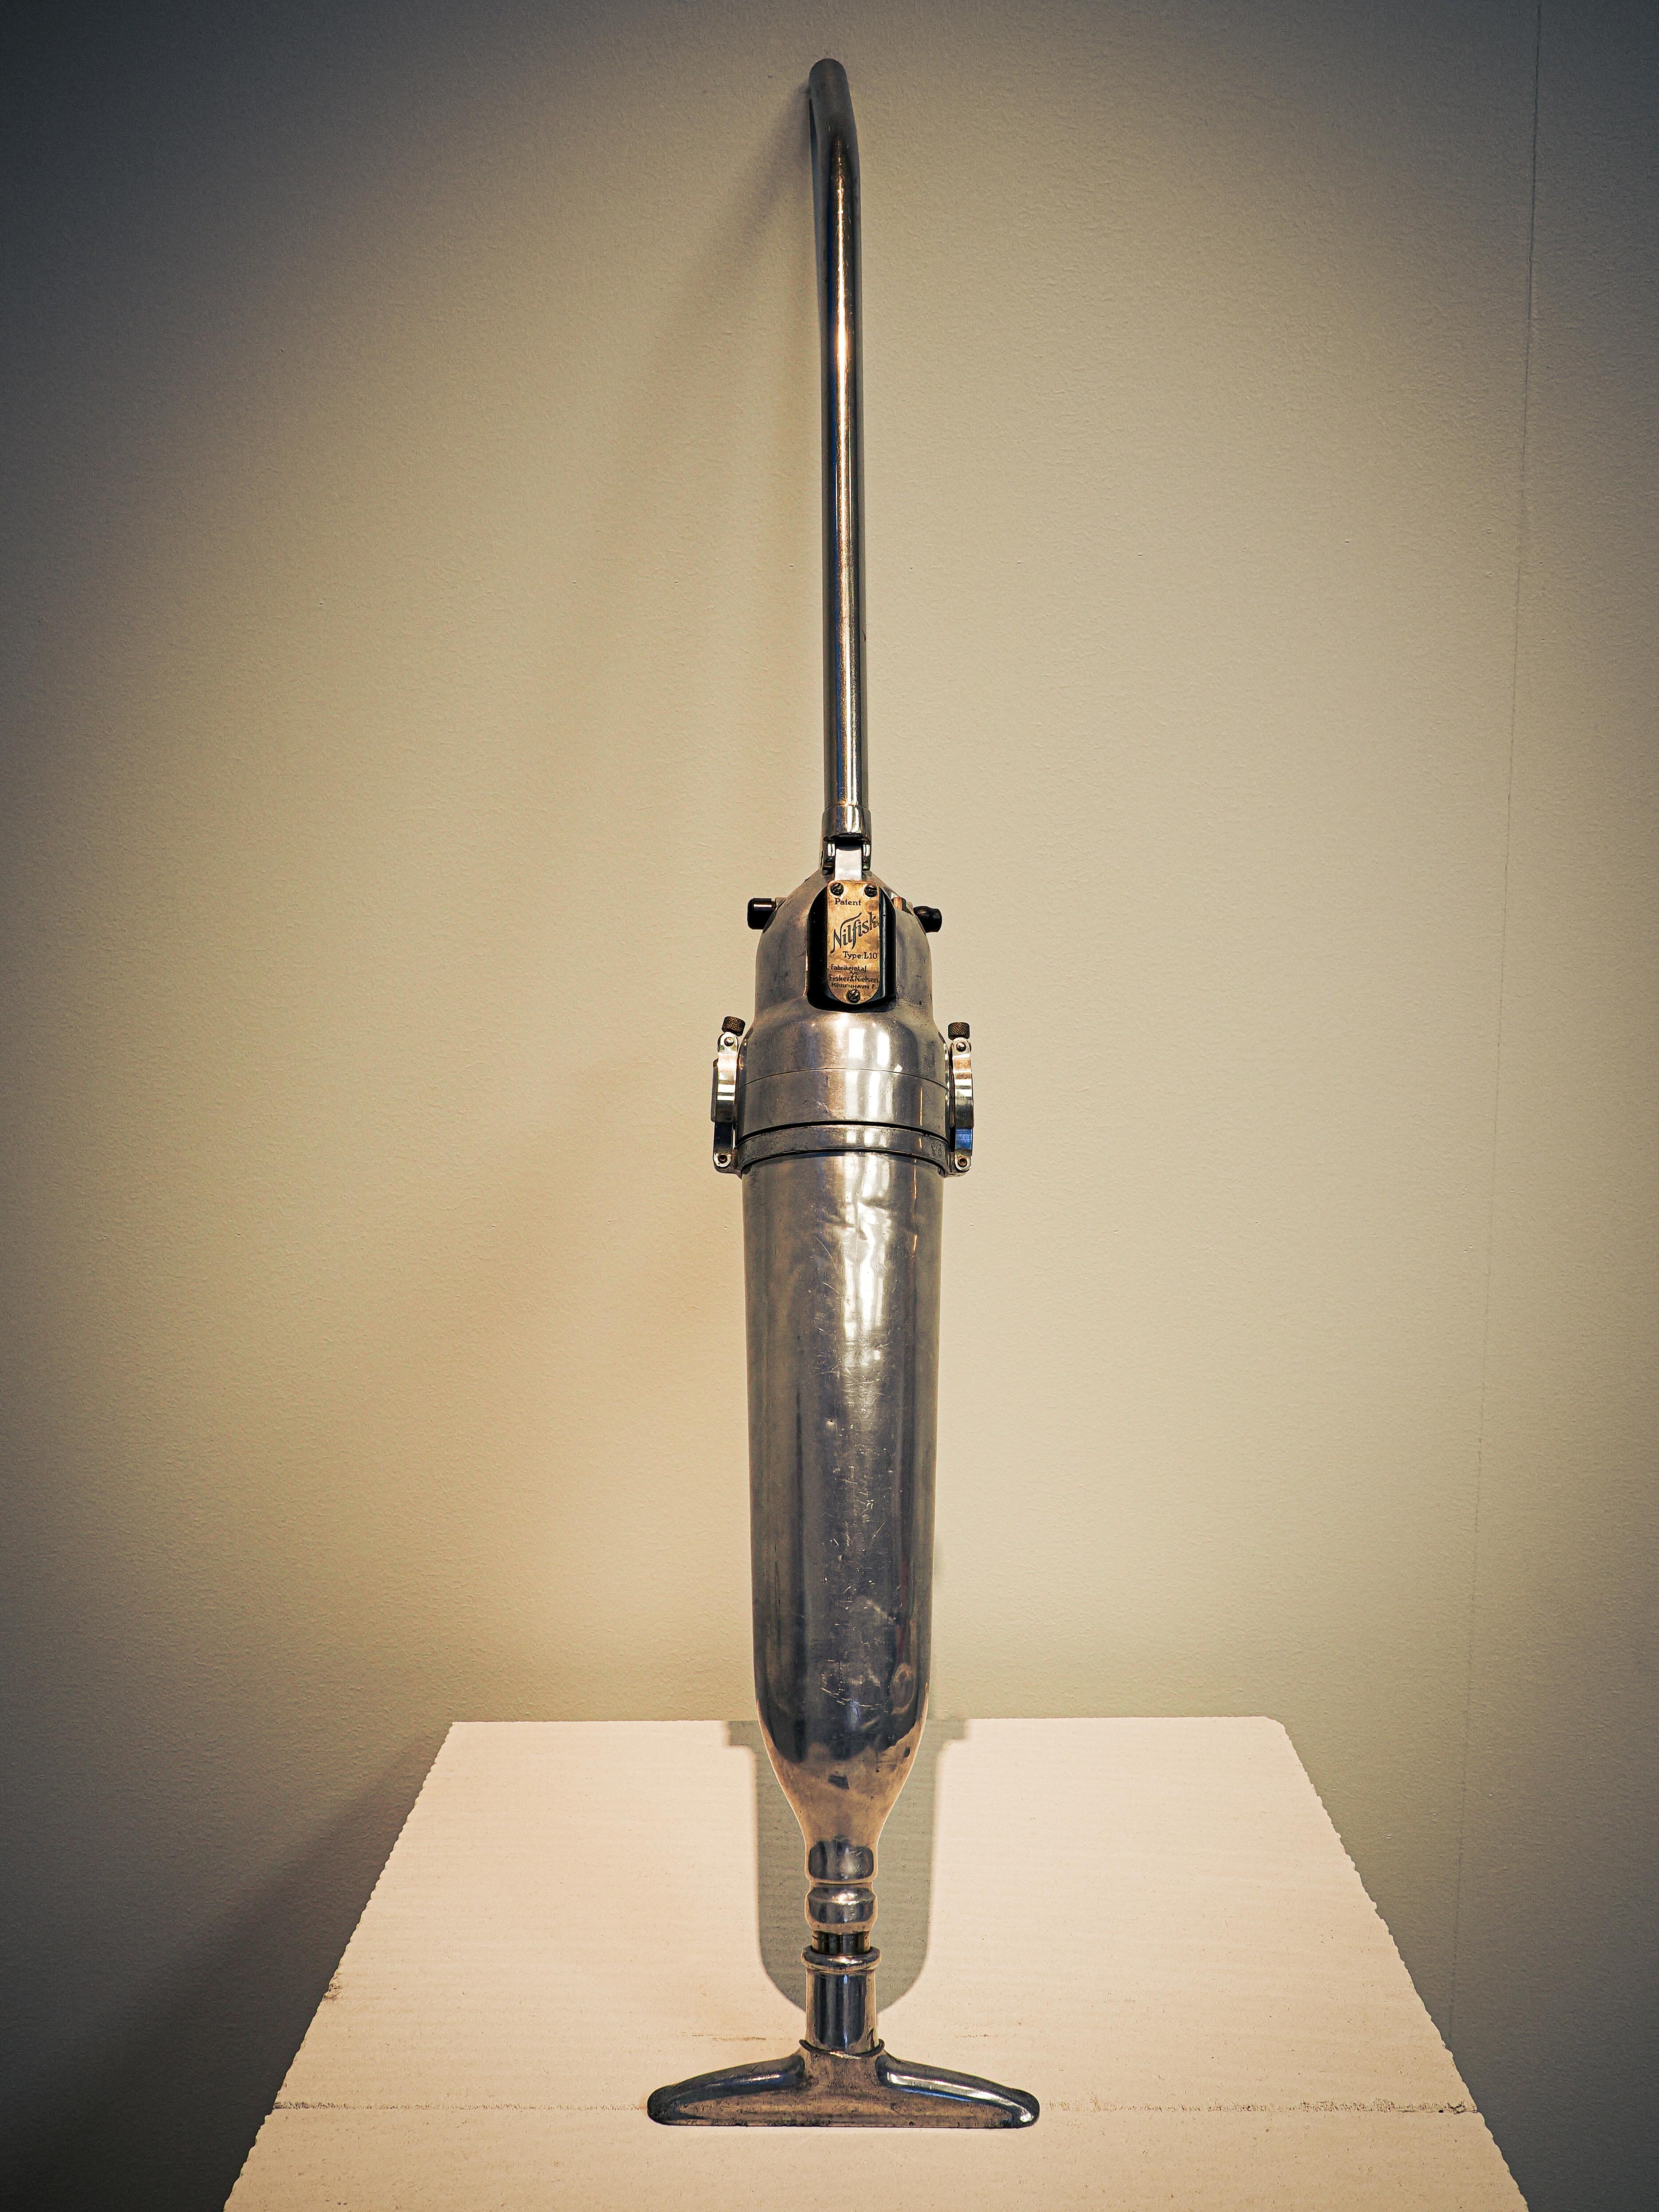 A 1922 Nilfisk vacuum cleaner in the Kopenhagen Design Museum